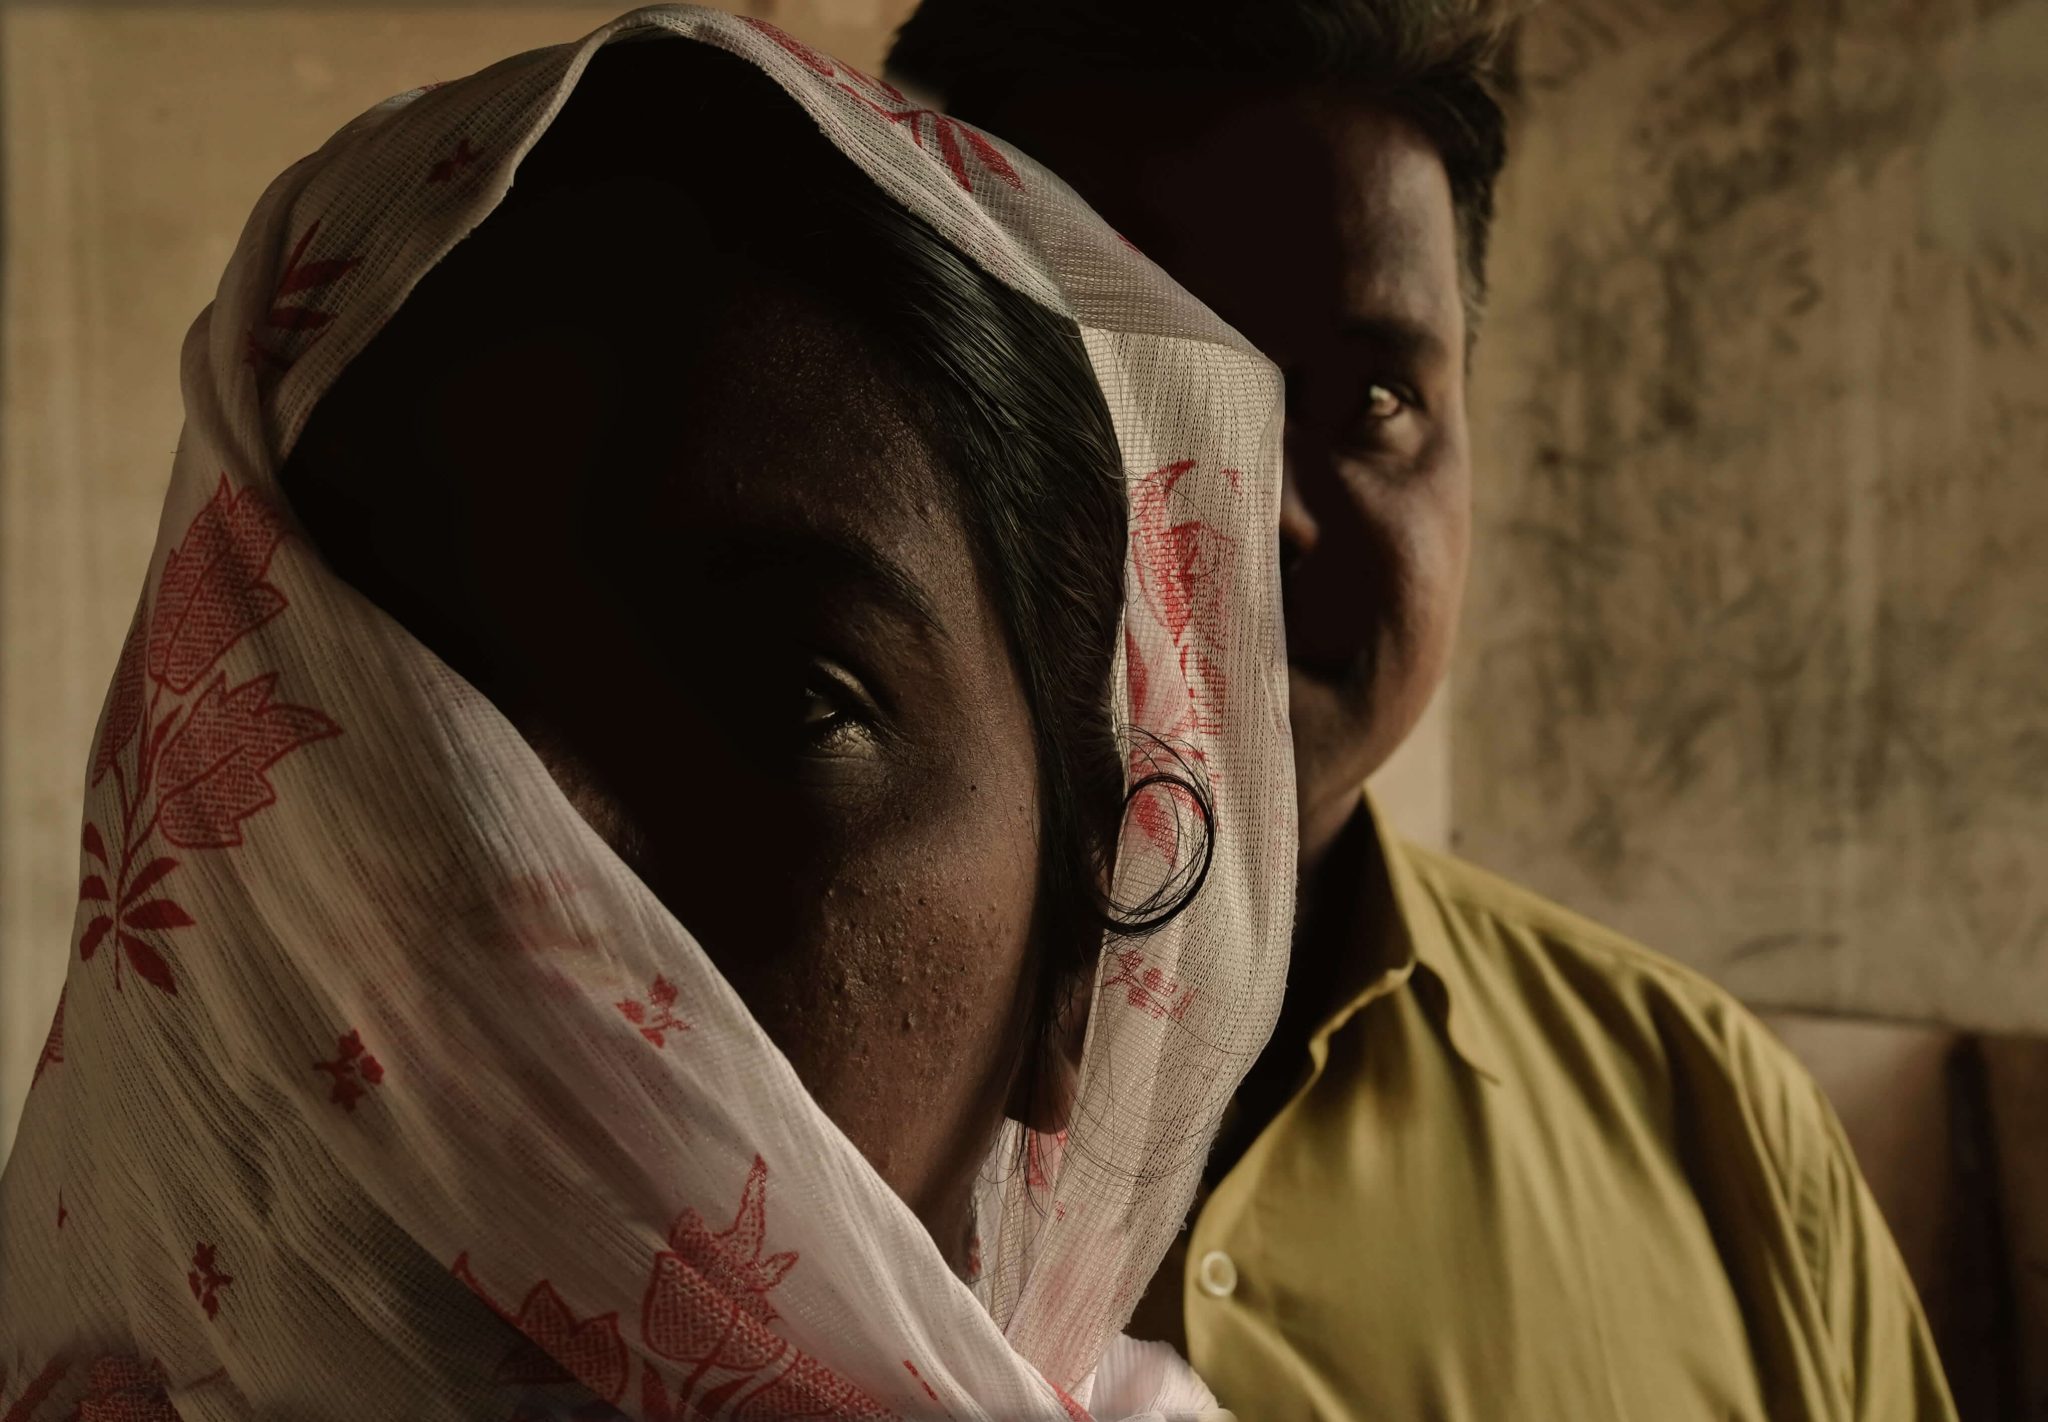 Intialainen nainen kasvot osittain huivilla peitettynä, naisen pään takaa näkyvät osittain miehen kasvot.